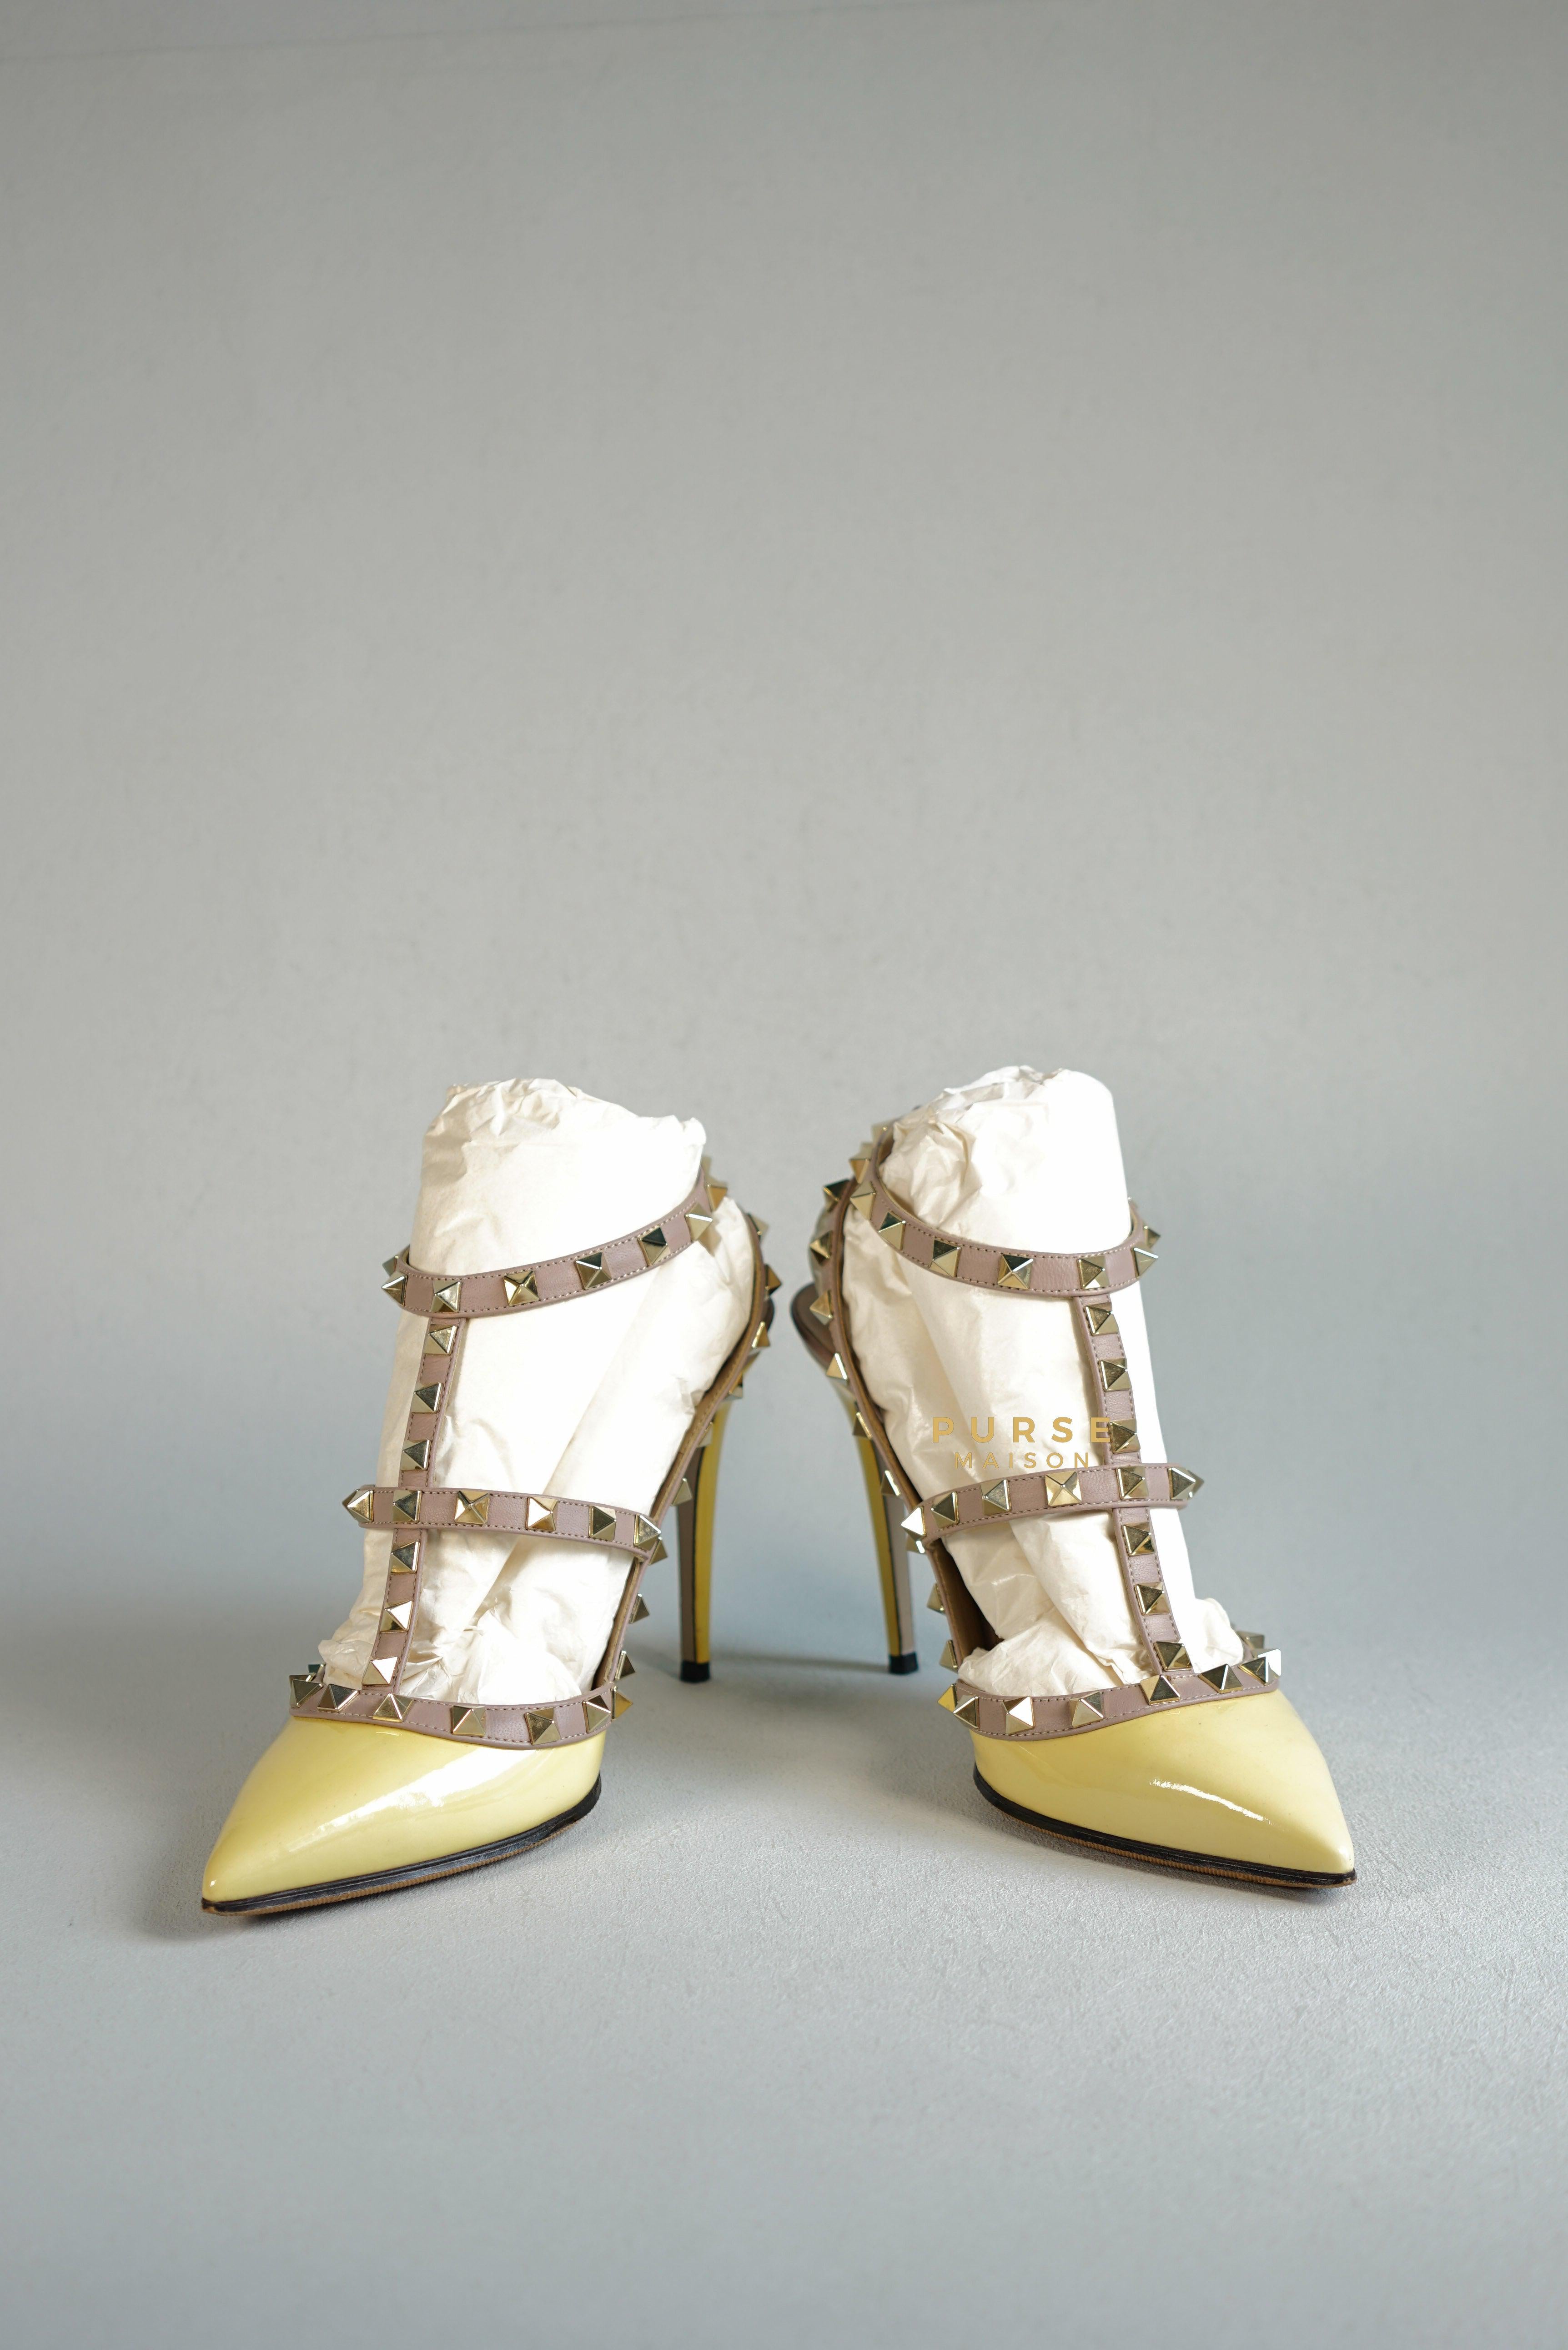 Valentino Garavani Rockstud High heels Ankle Strap Multicolor (size 37.5 EUR) | Purse Maison Luxury Bags Shop